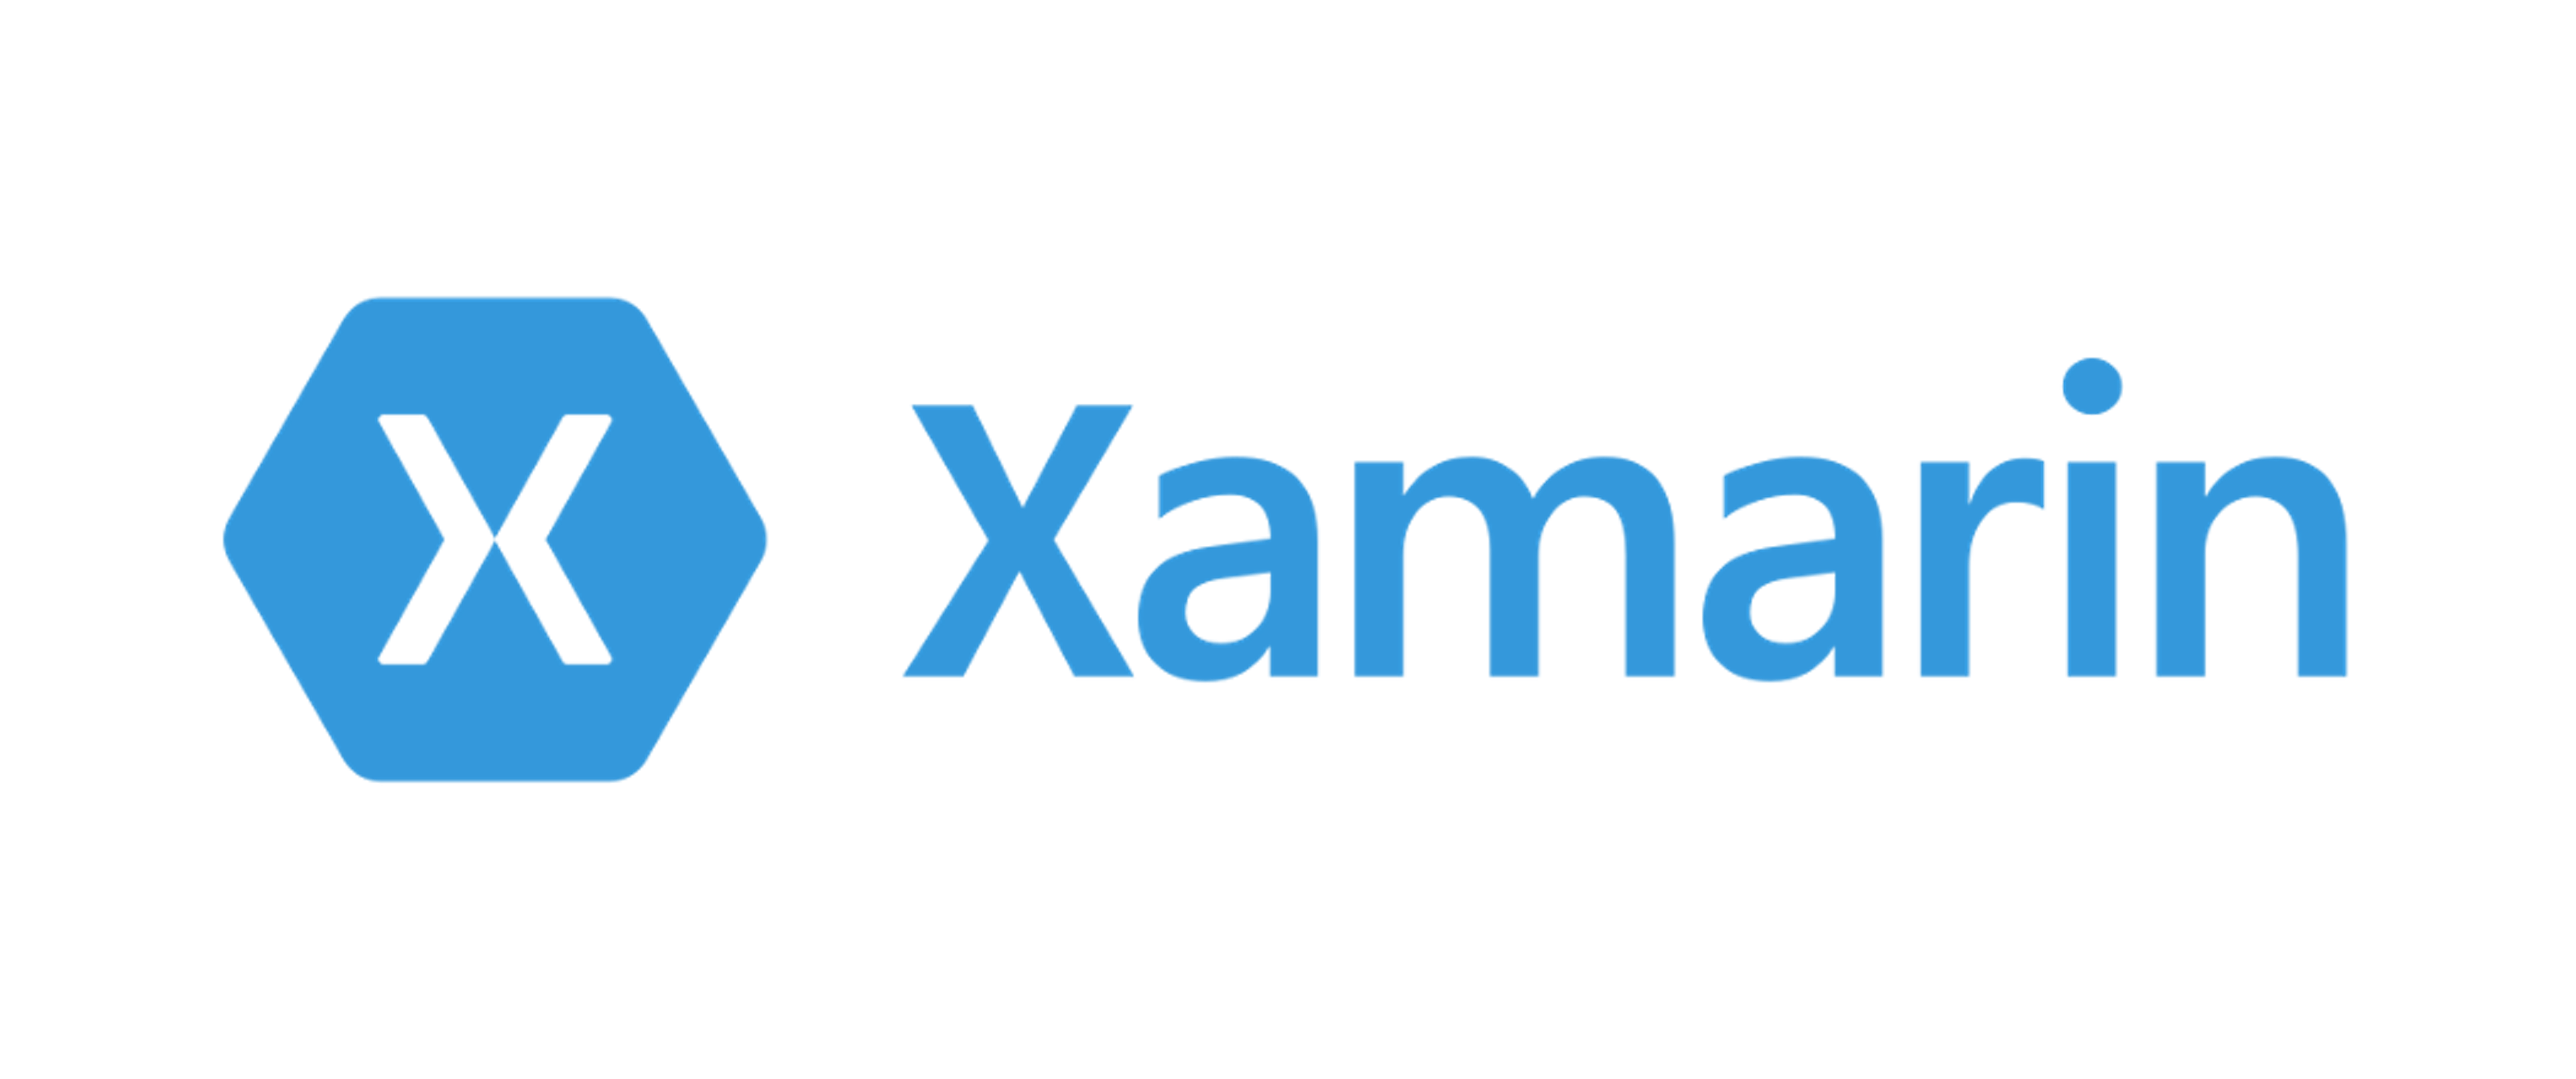 Xamarin, an open source UI framework